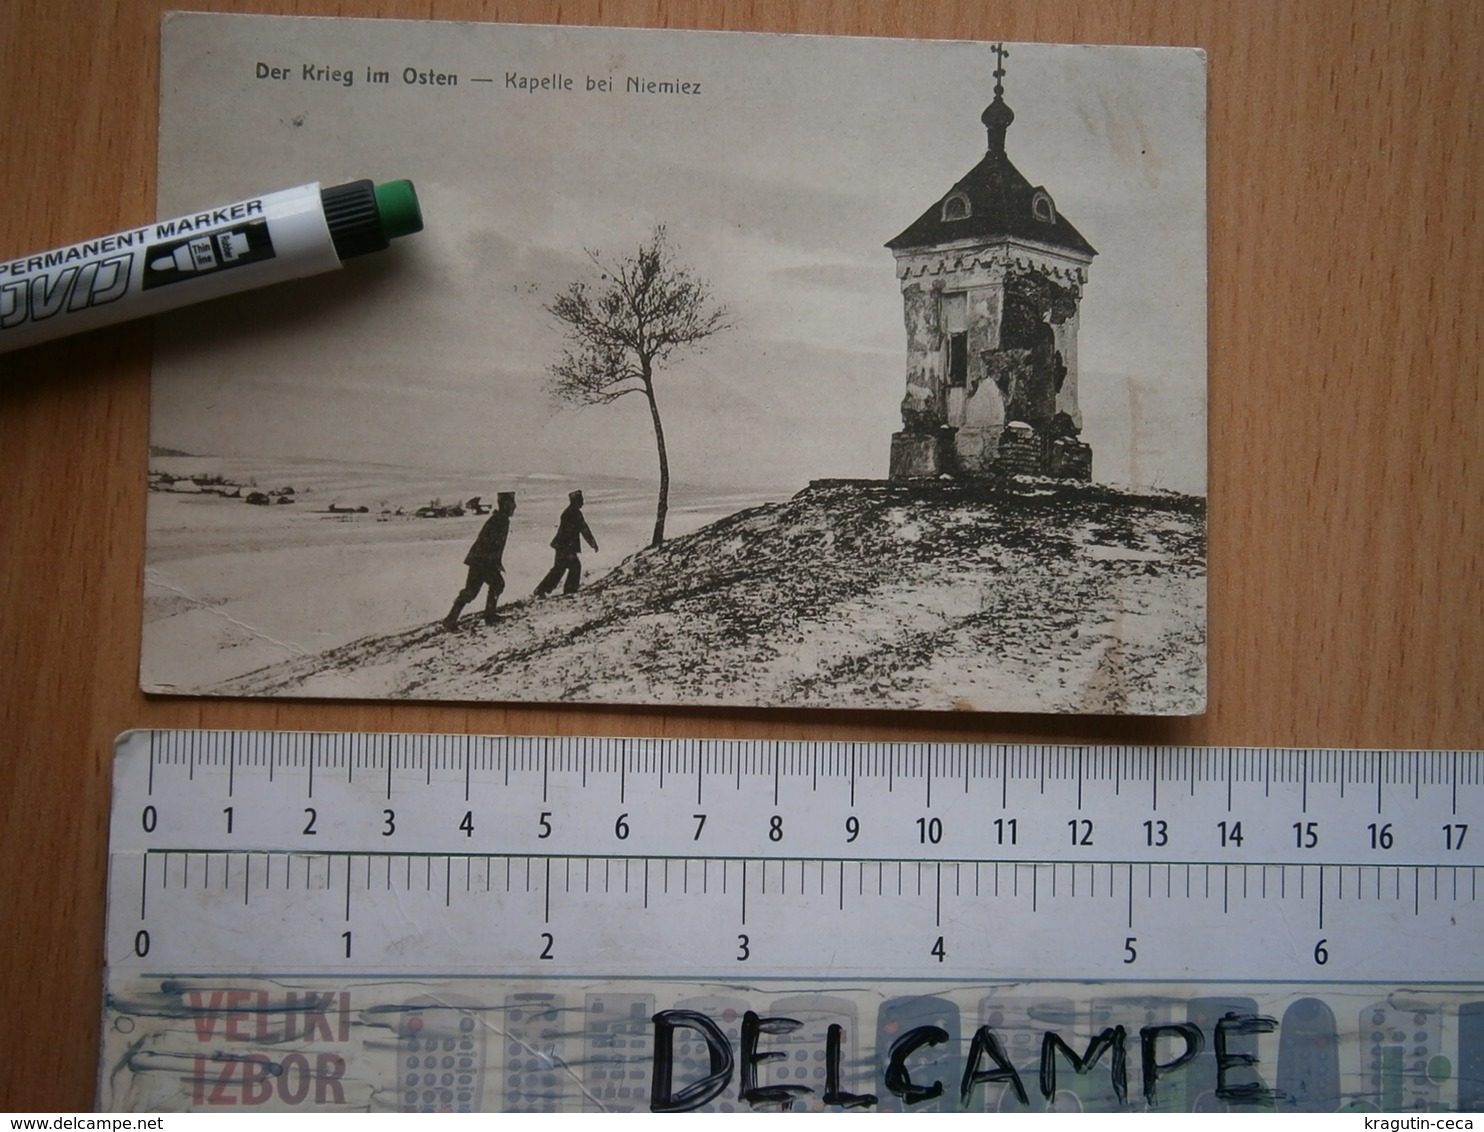 WWI WW1 KRIEG OSTEN KAPELLE NIEMIEZ GERMANY ARMY CARD POSTCARD POSTKARTE CARTE POSTALE PHOTO MILITARY FELDPOSTKARTE - Guerre 1914-18